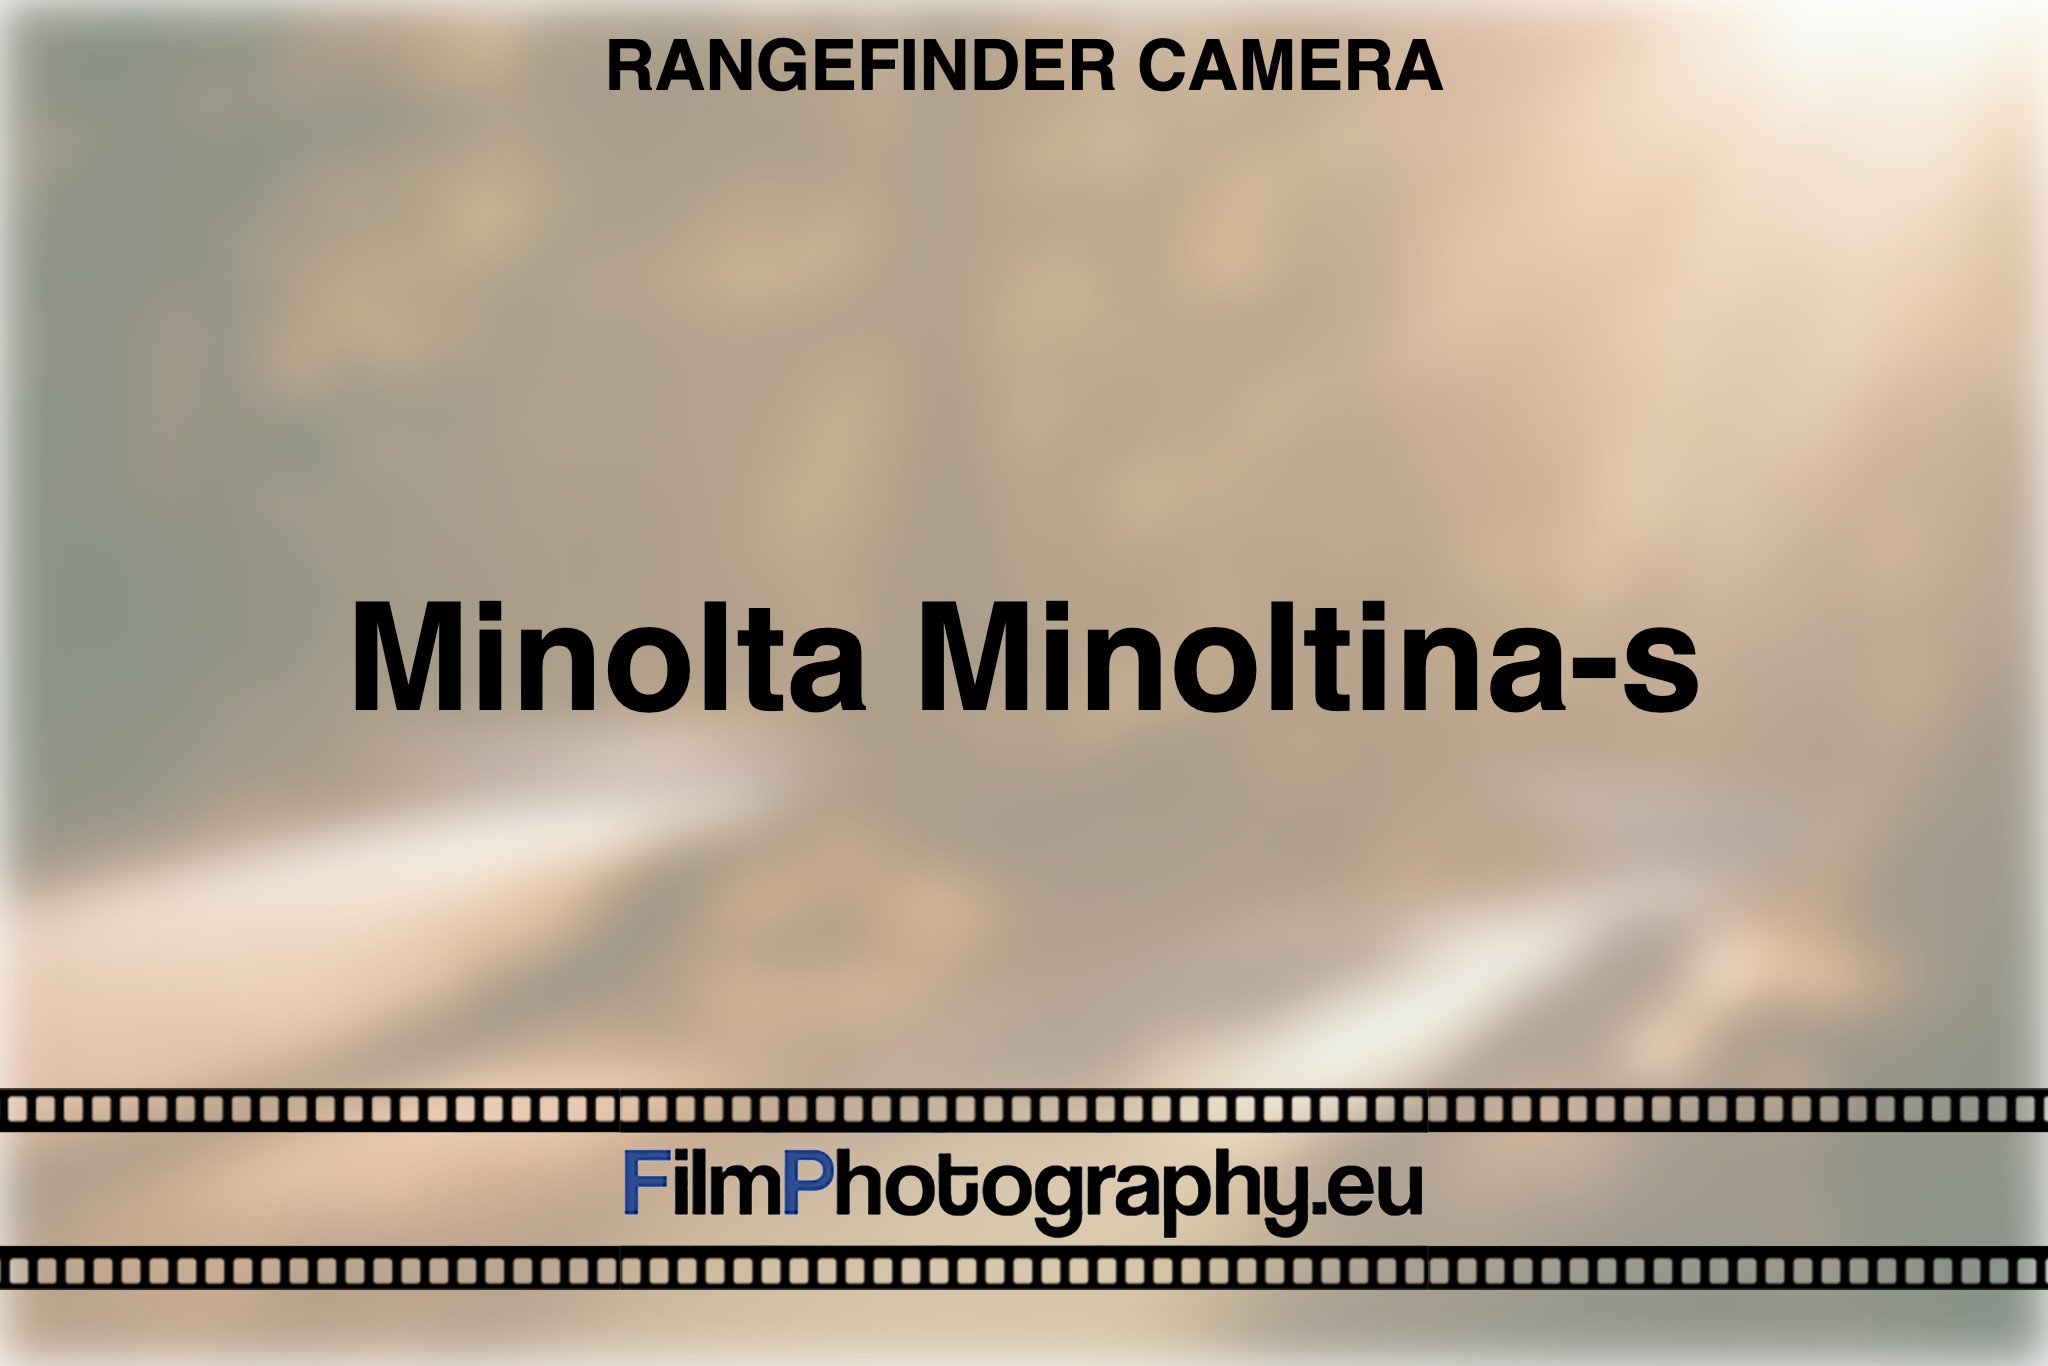 minolta-minoltina-s-rangefinder-camera-bnv